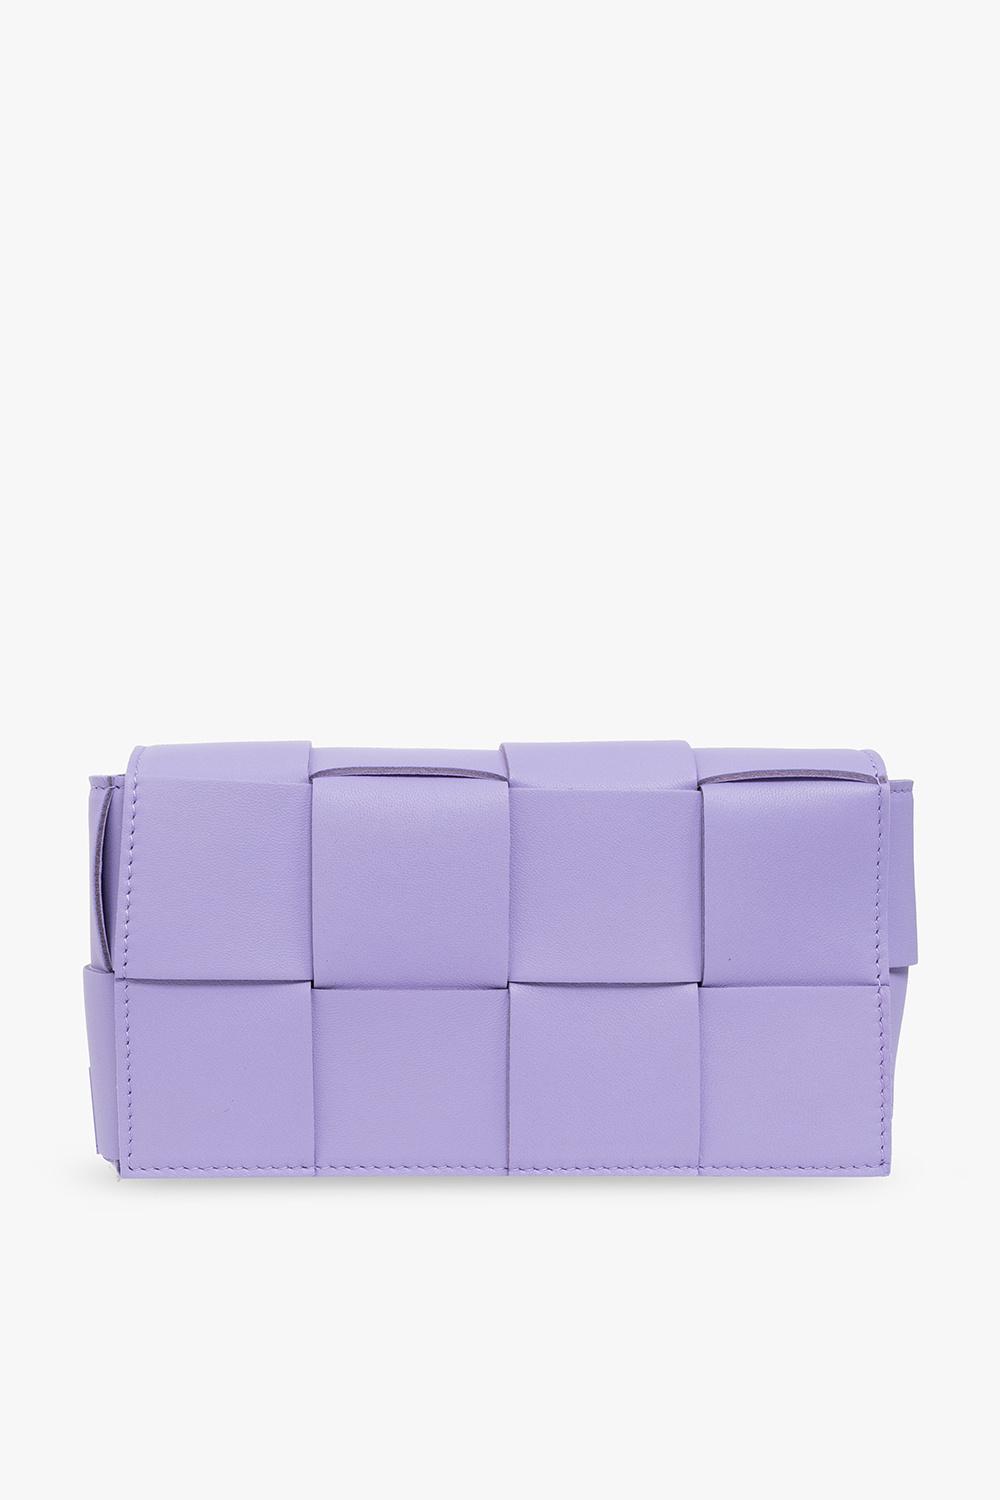 Bottega Veneta mini candy cassette bag- Unicorn/Purple